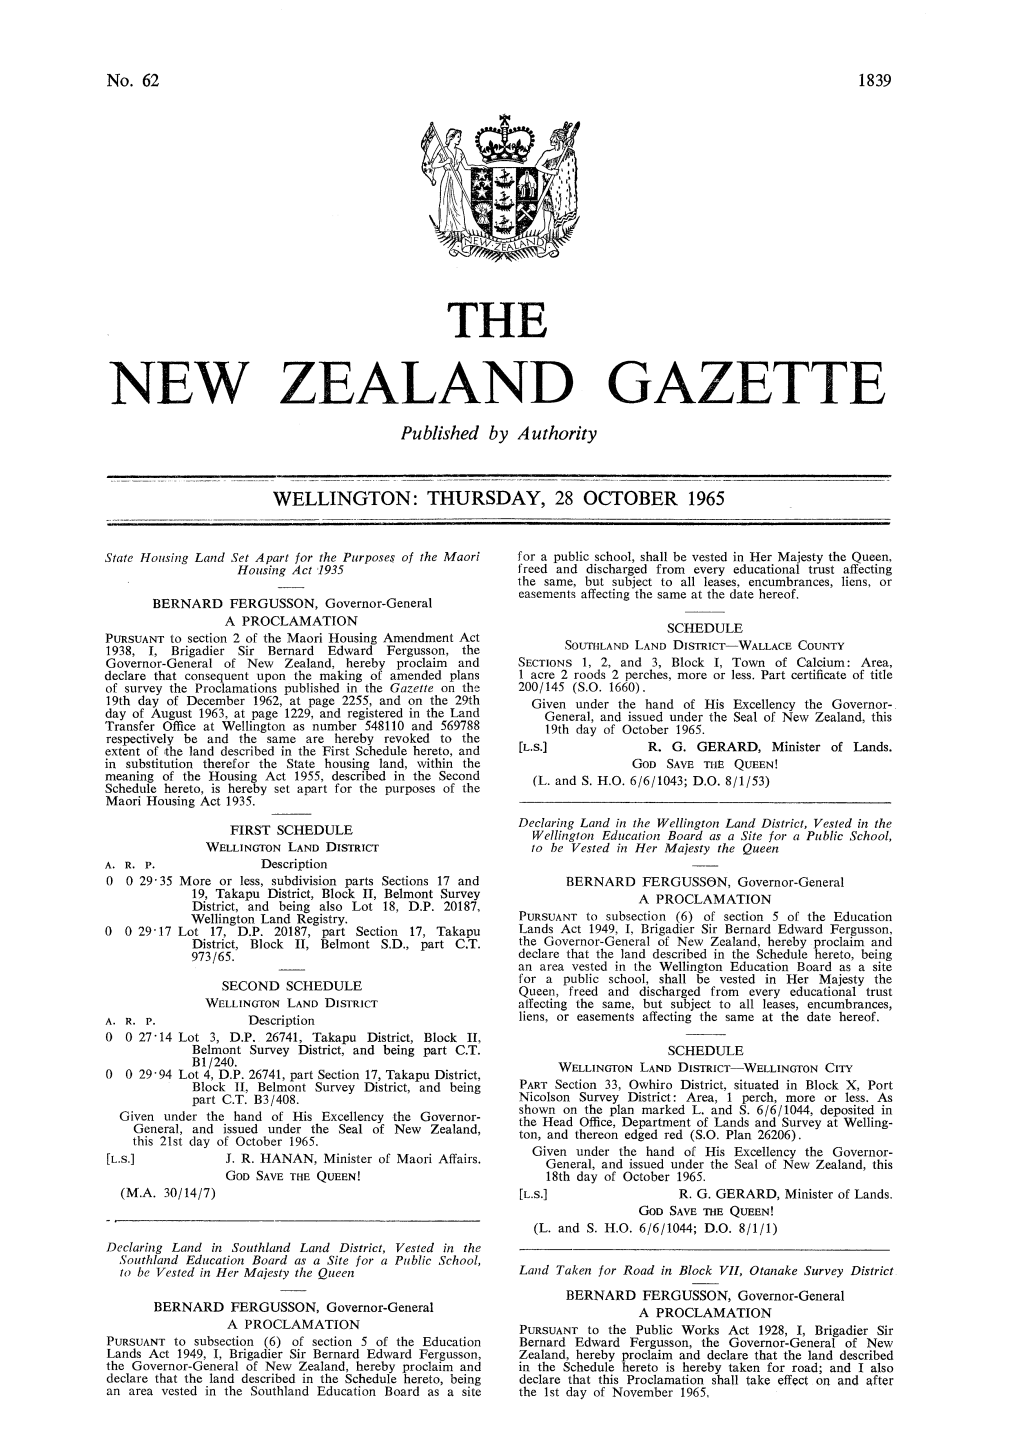 No 62, 28 October 1965, 1839